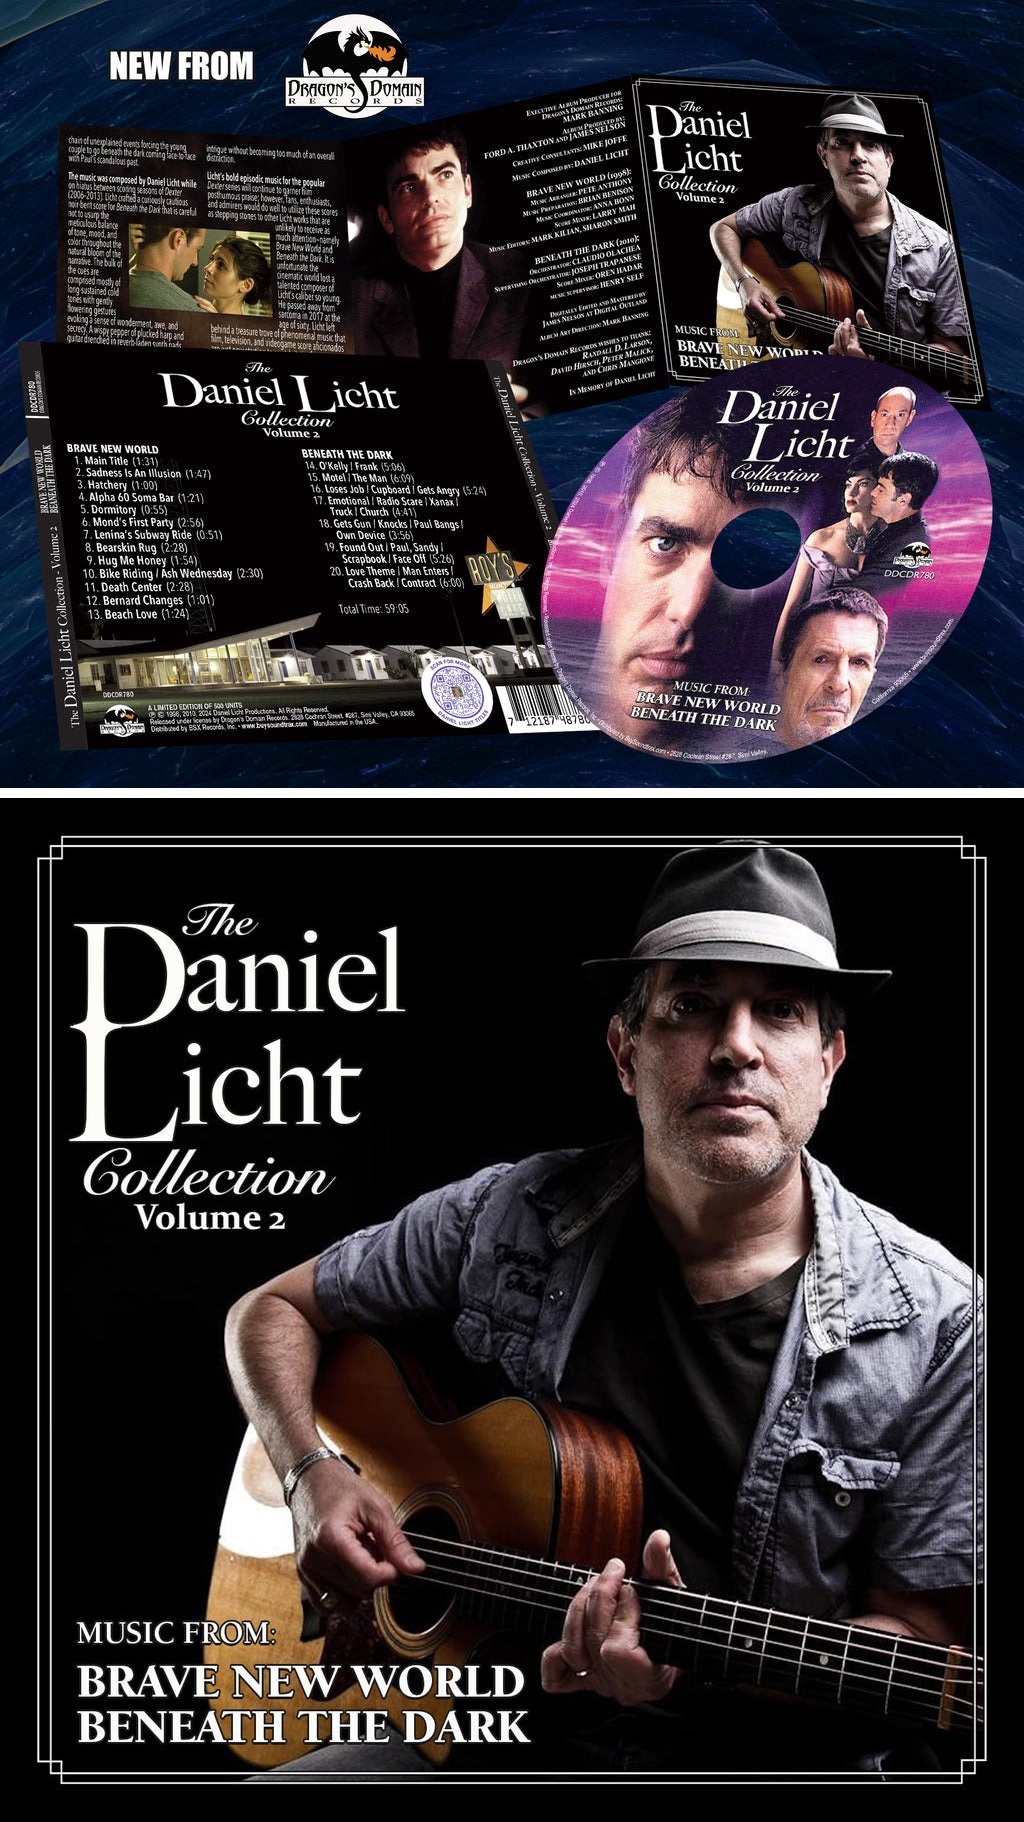 The Daniel Licht Collection: Volume 2